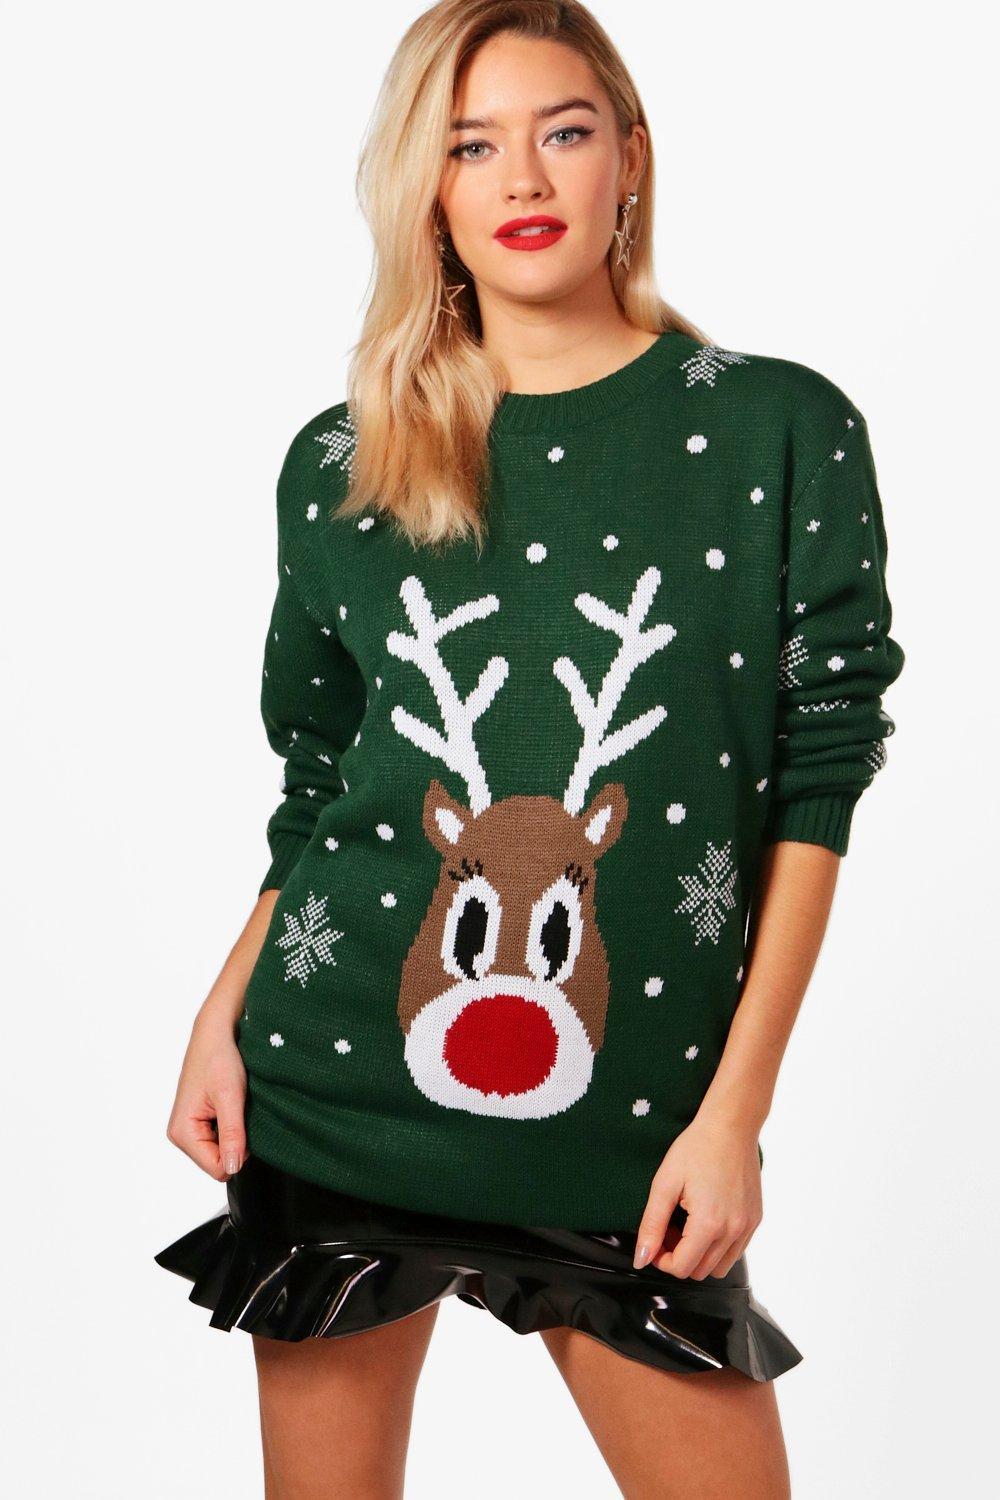 Boohoo Womens Snowflake Reindeer Christmas Sweater in Green - Lyst